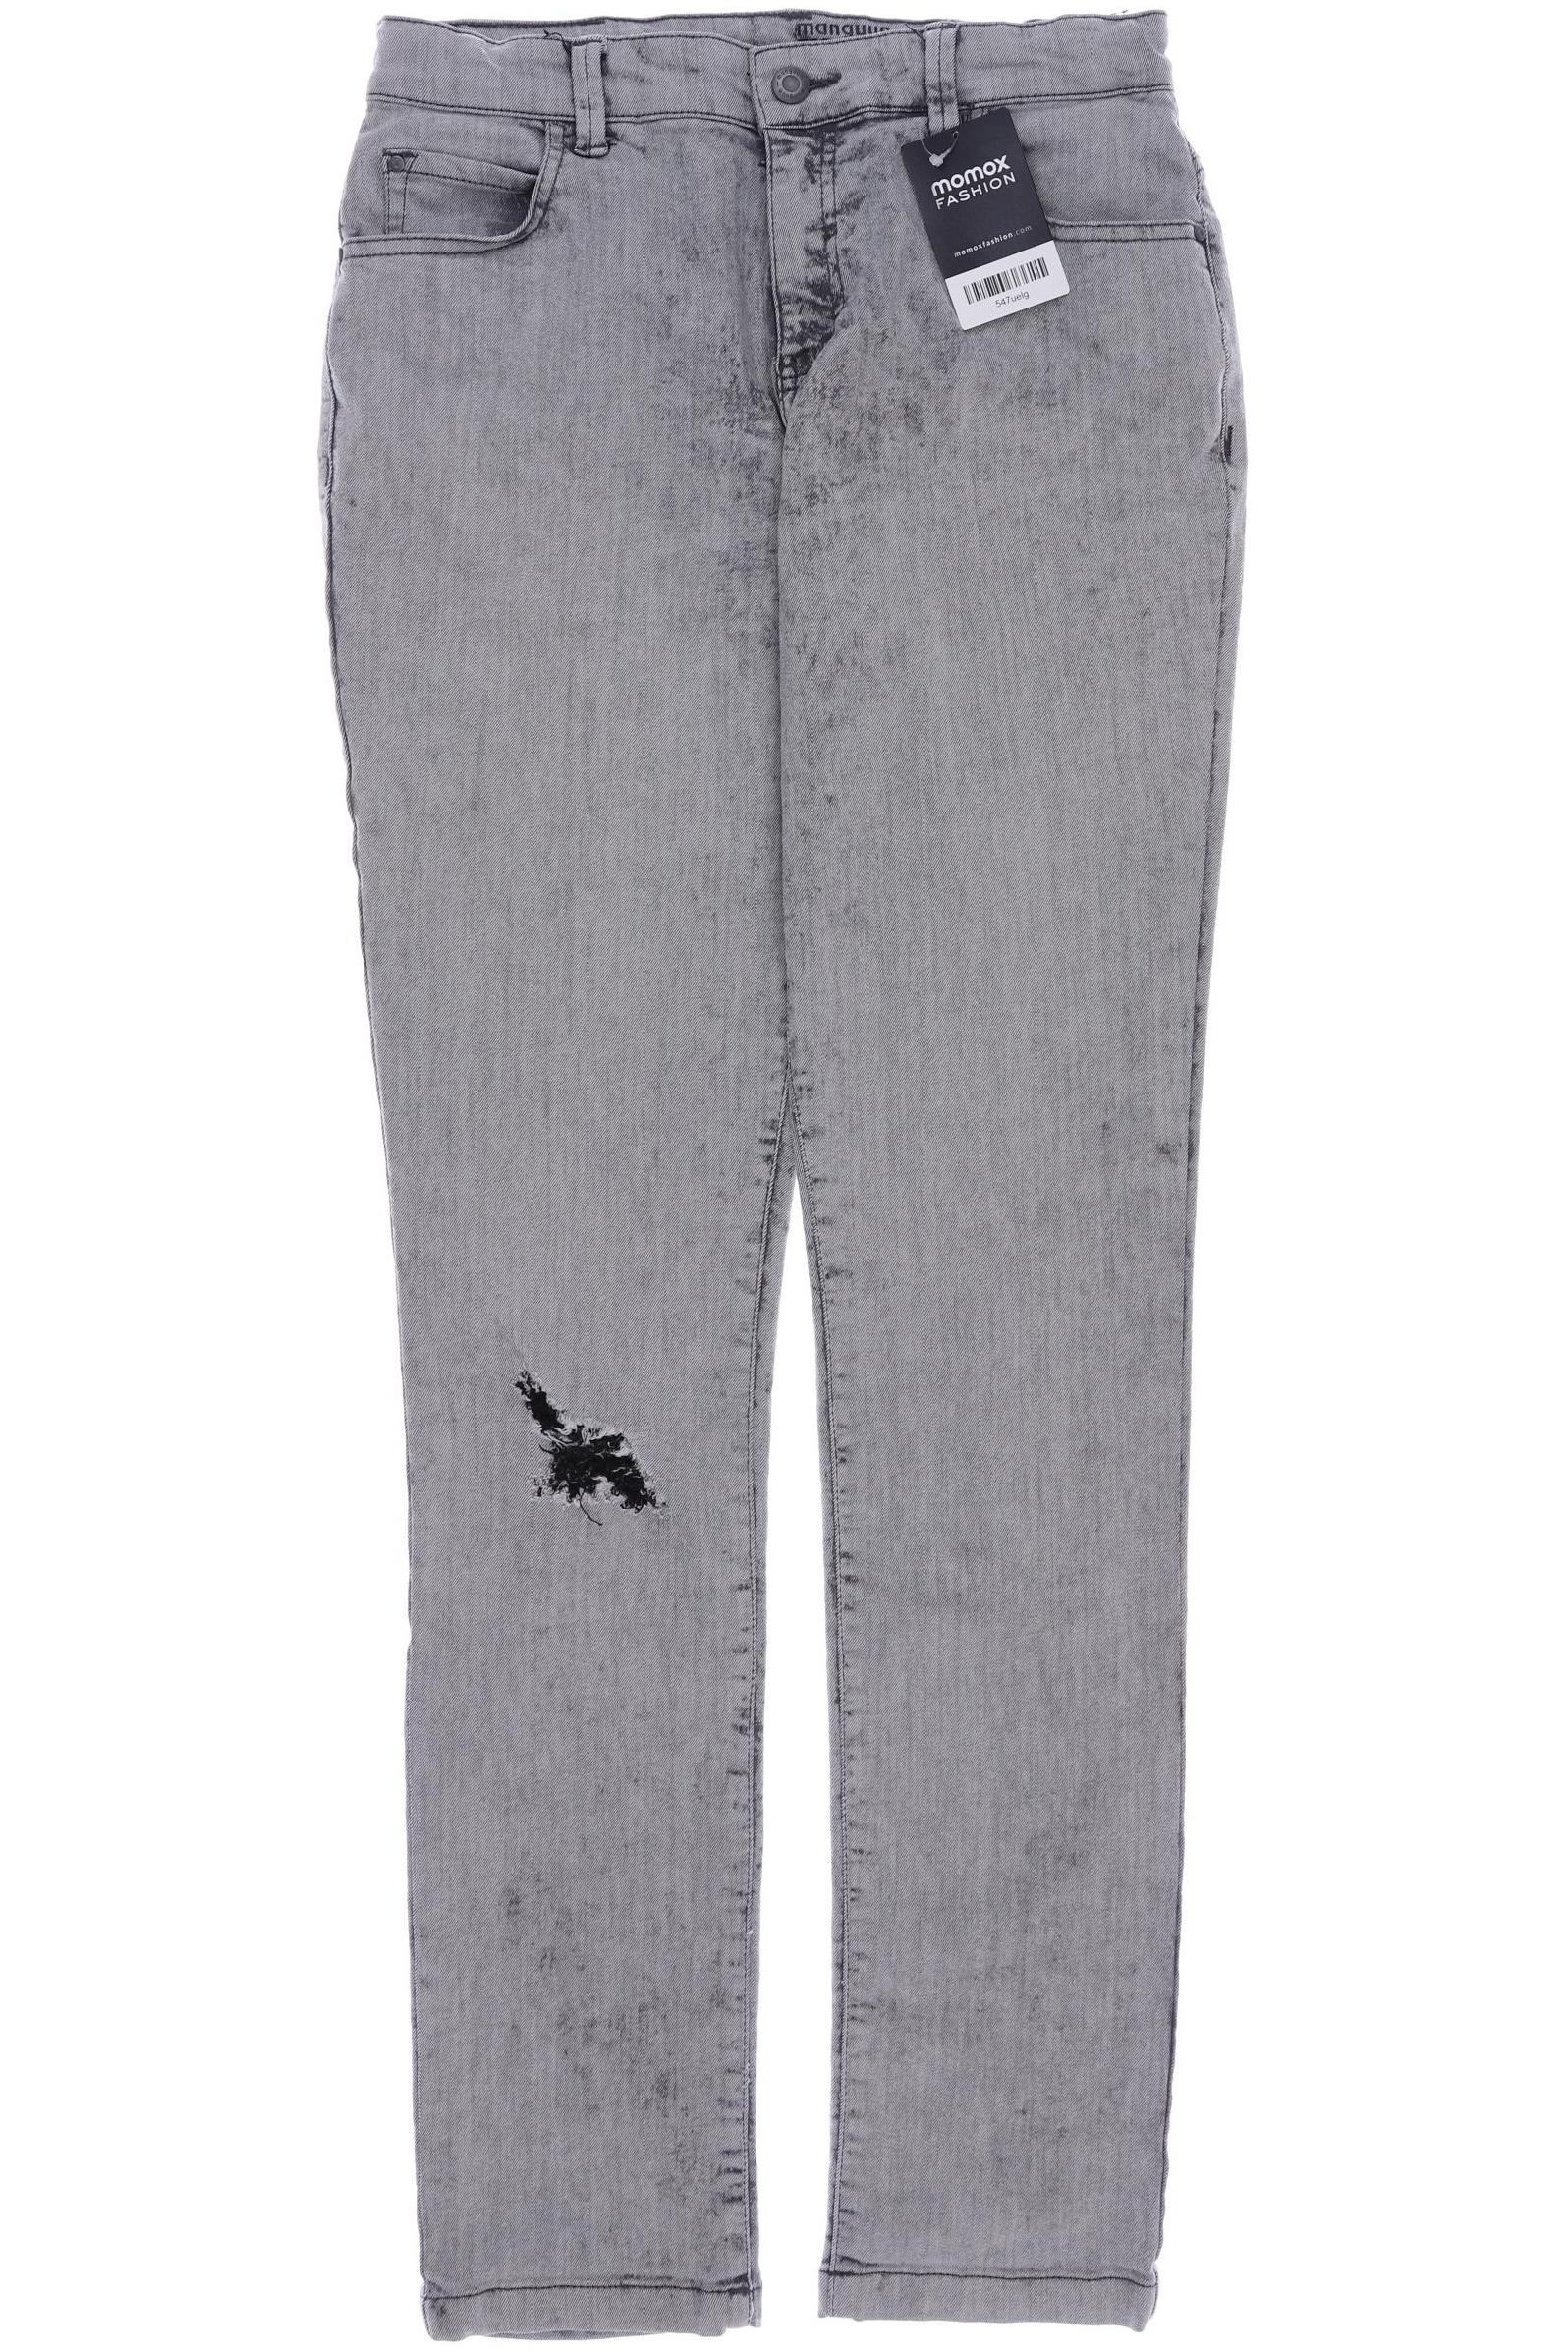 Manguun Herren Jeans, grau, Gr. 170 von Manguun